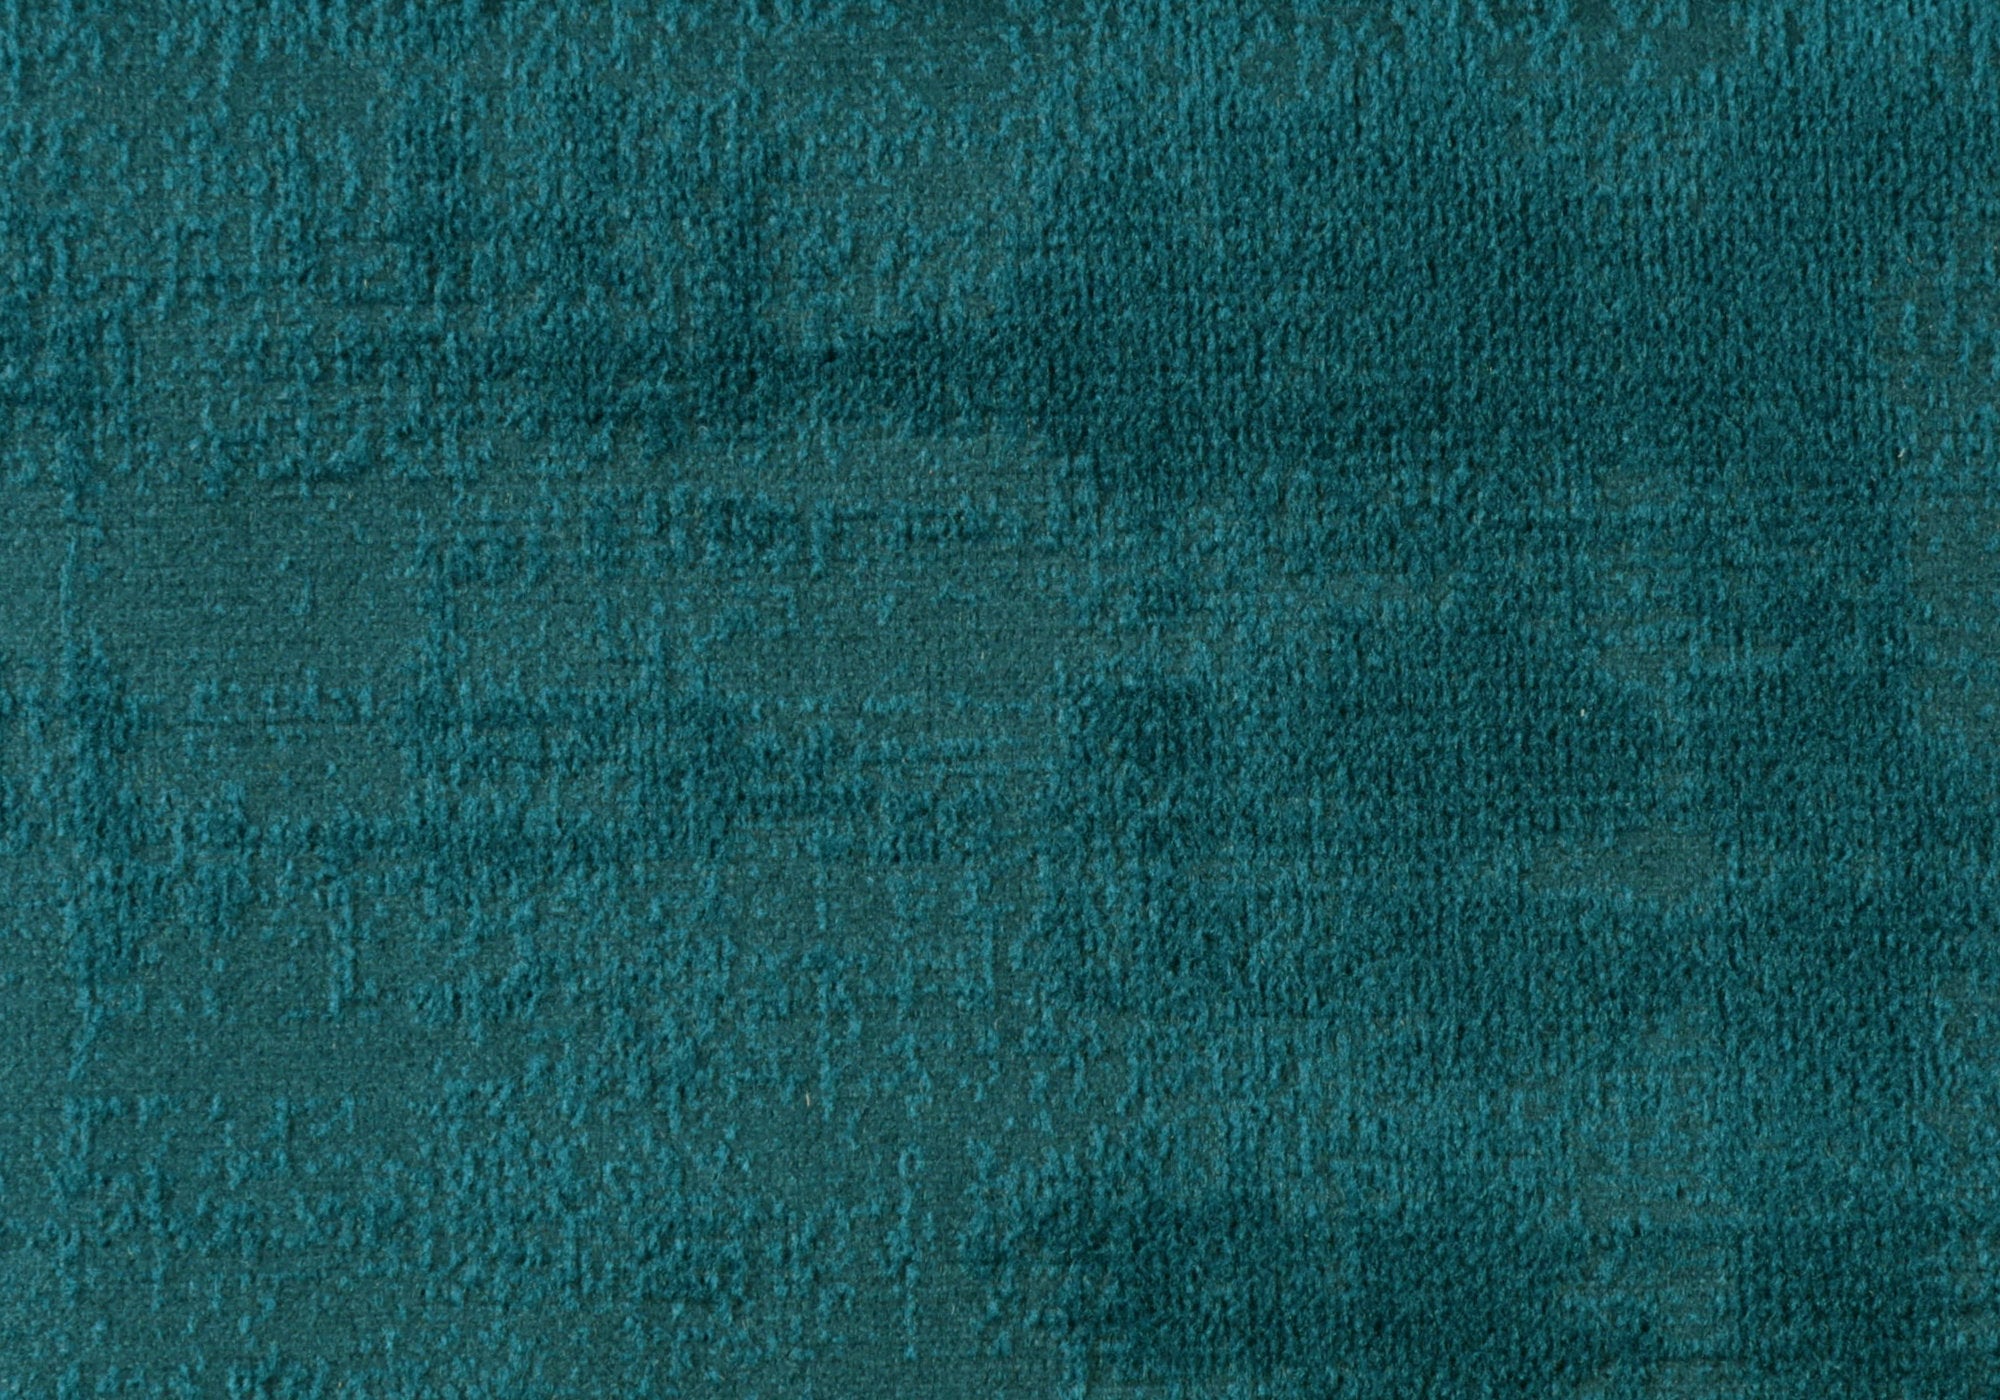 Pillow - 18X 18 / Turquoise Brushed Velvet / 1Pc